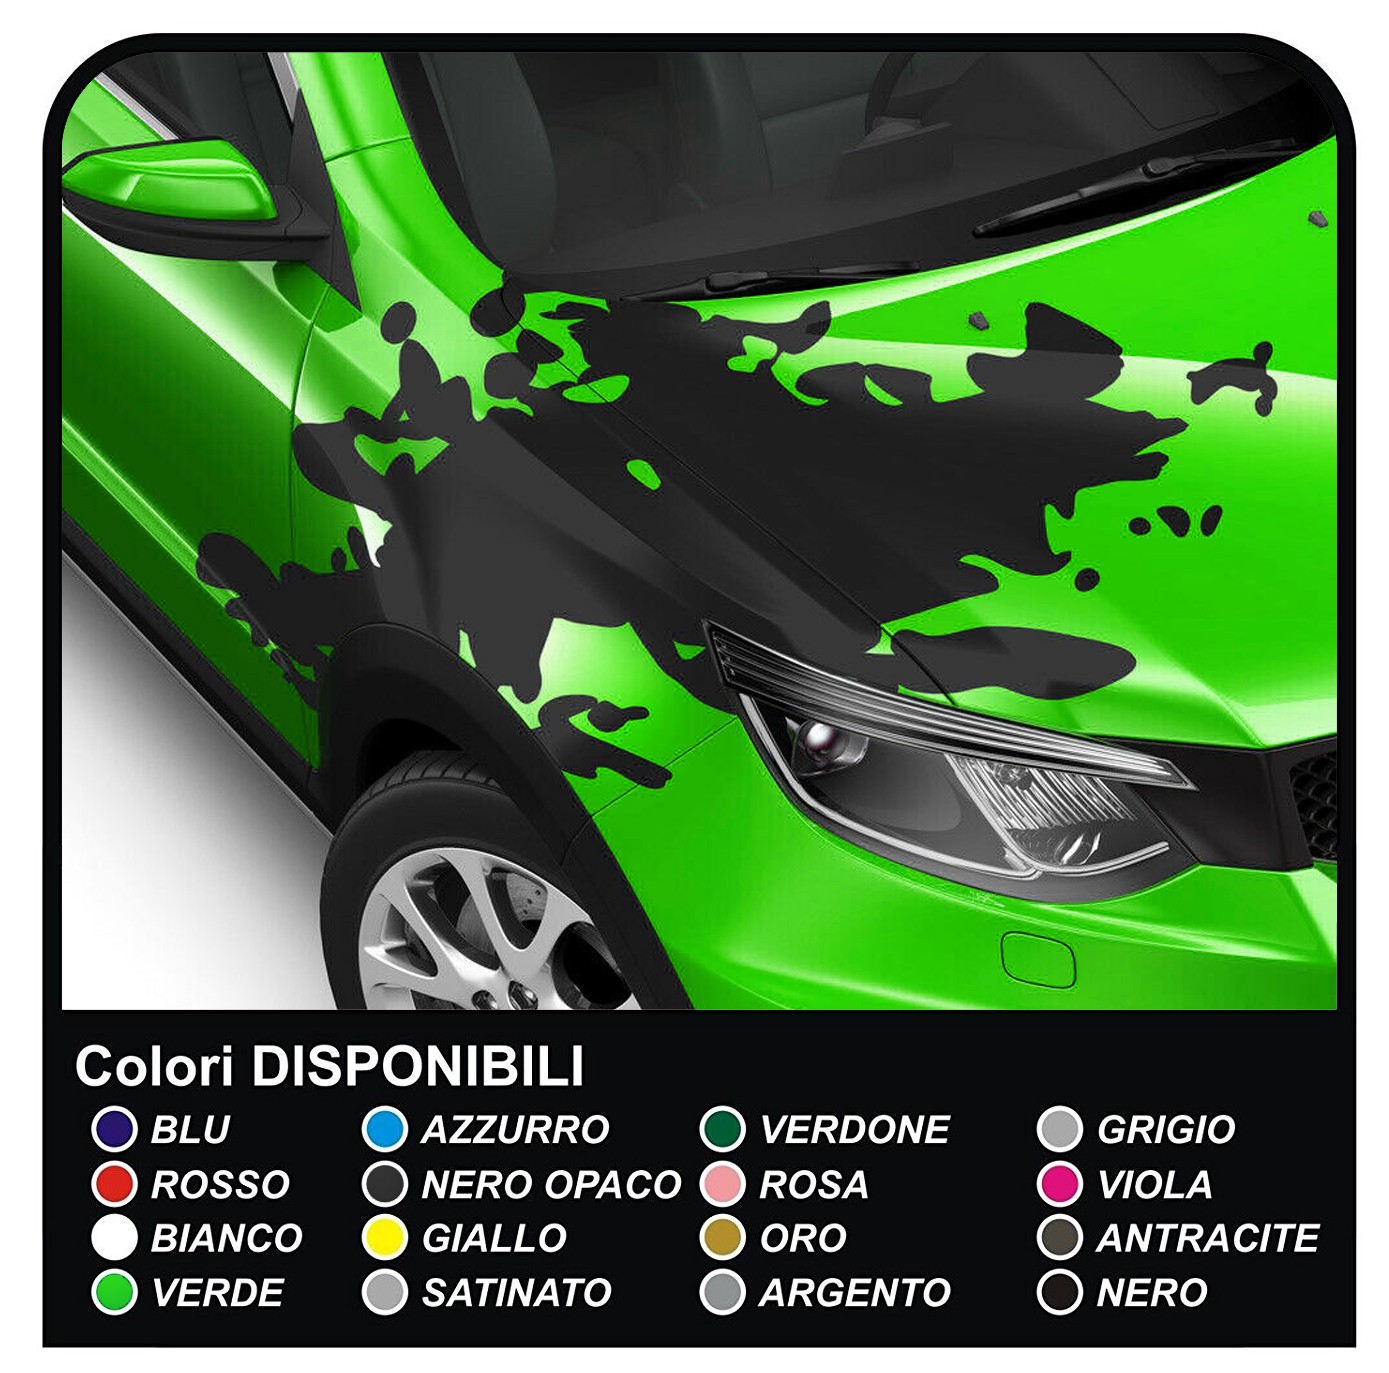 Aufkleber für motorhaube auto-universal für alle auto-Aufkleber, Rallye- Streifen auf motorhaube auto